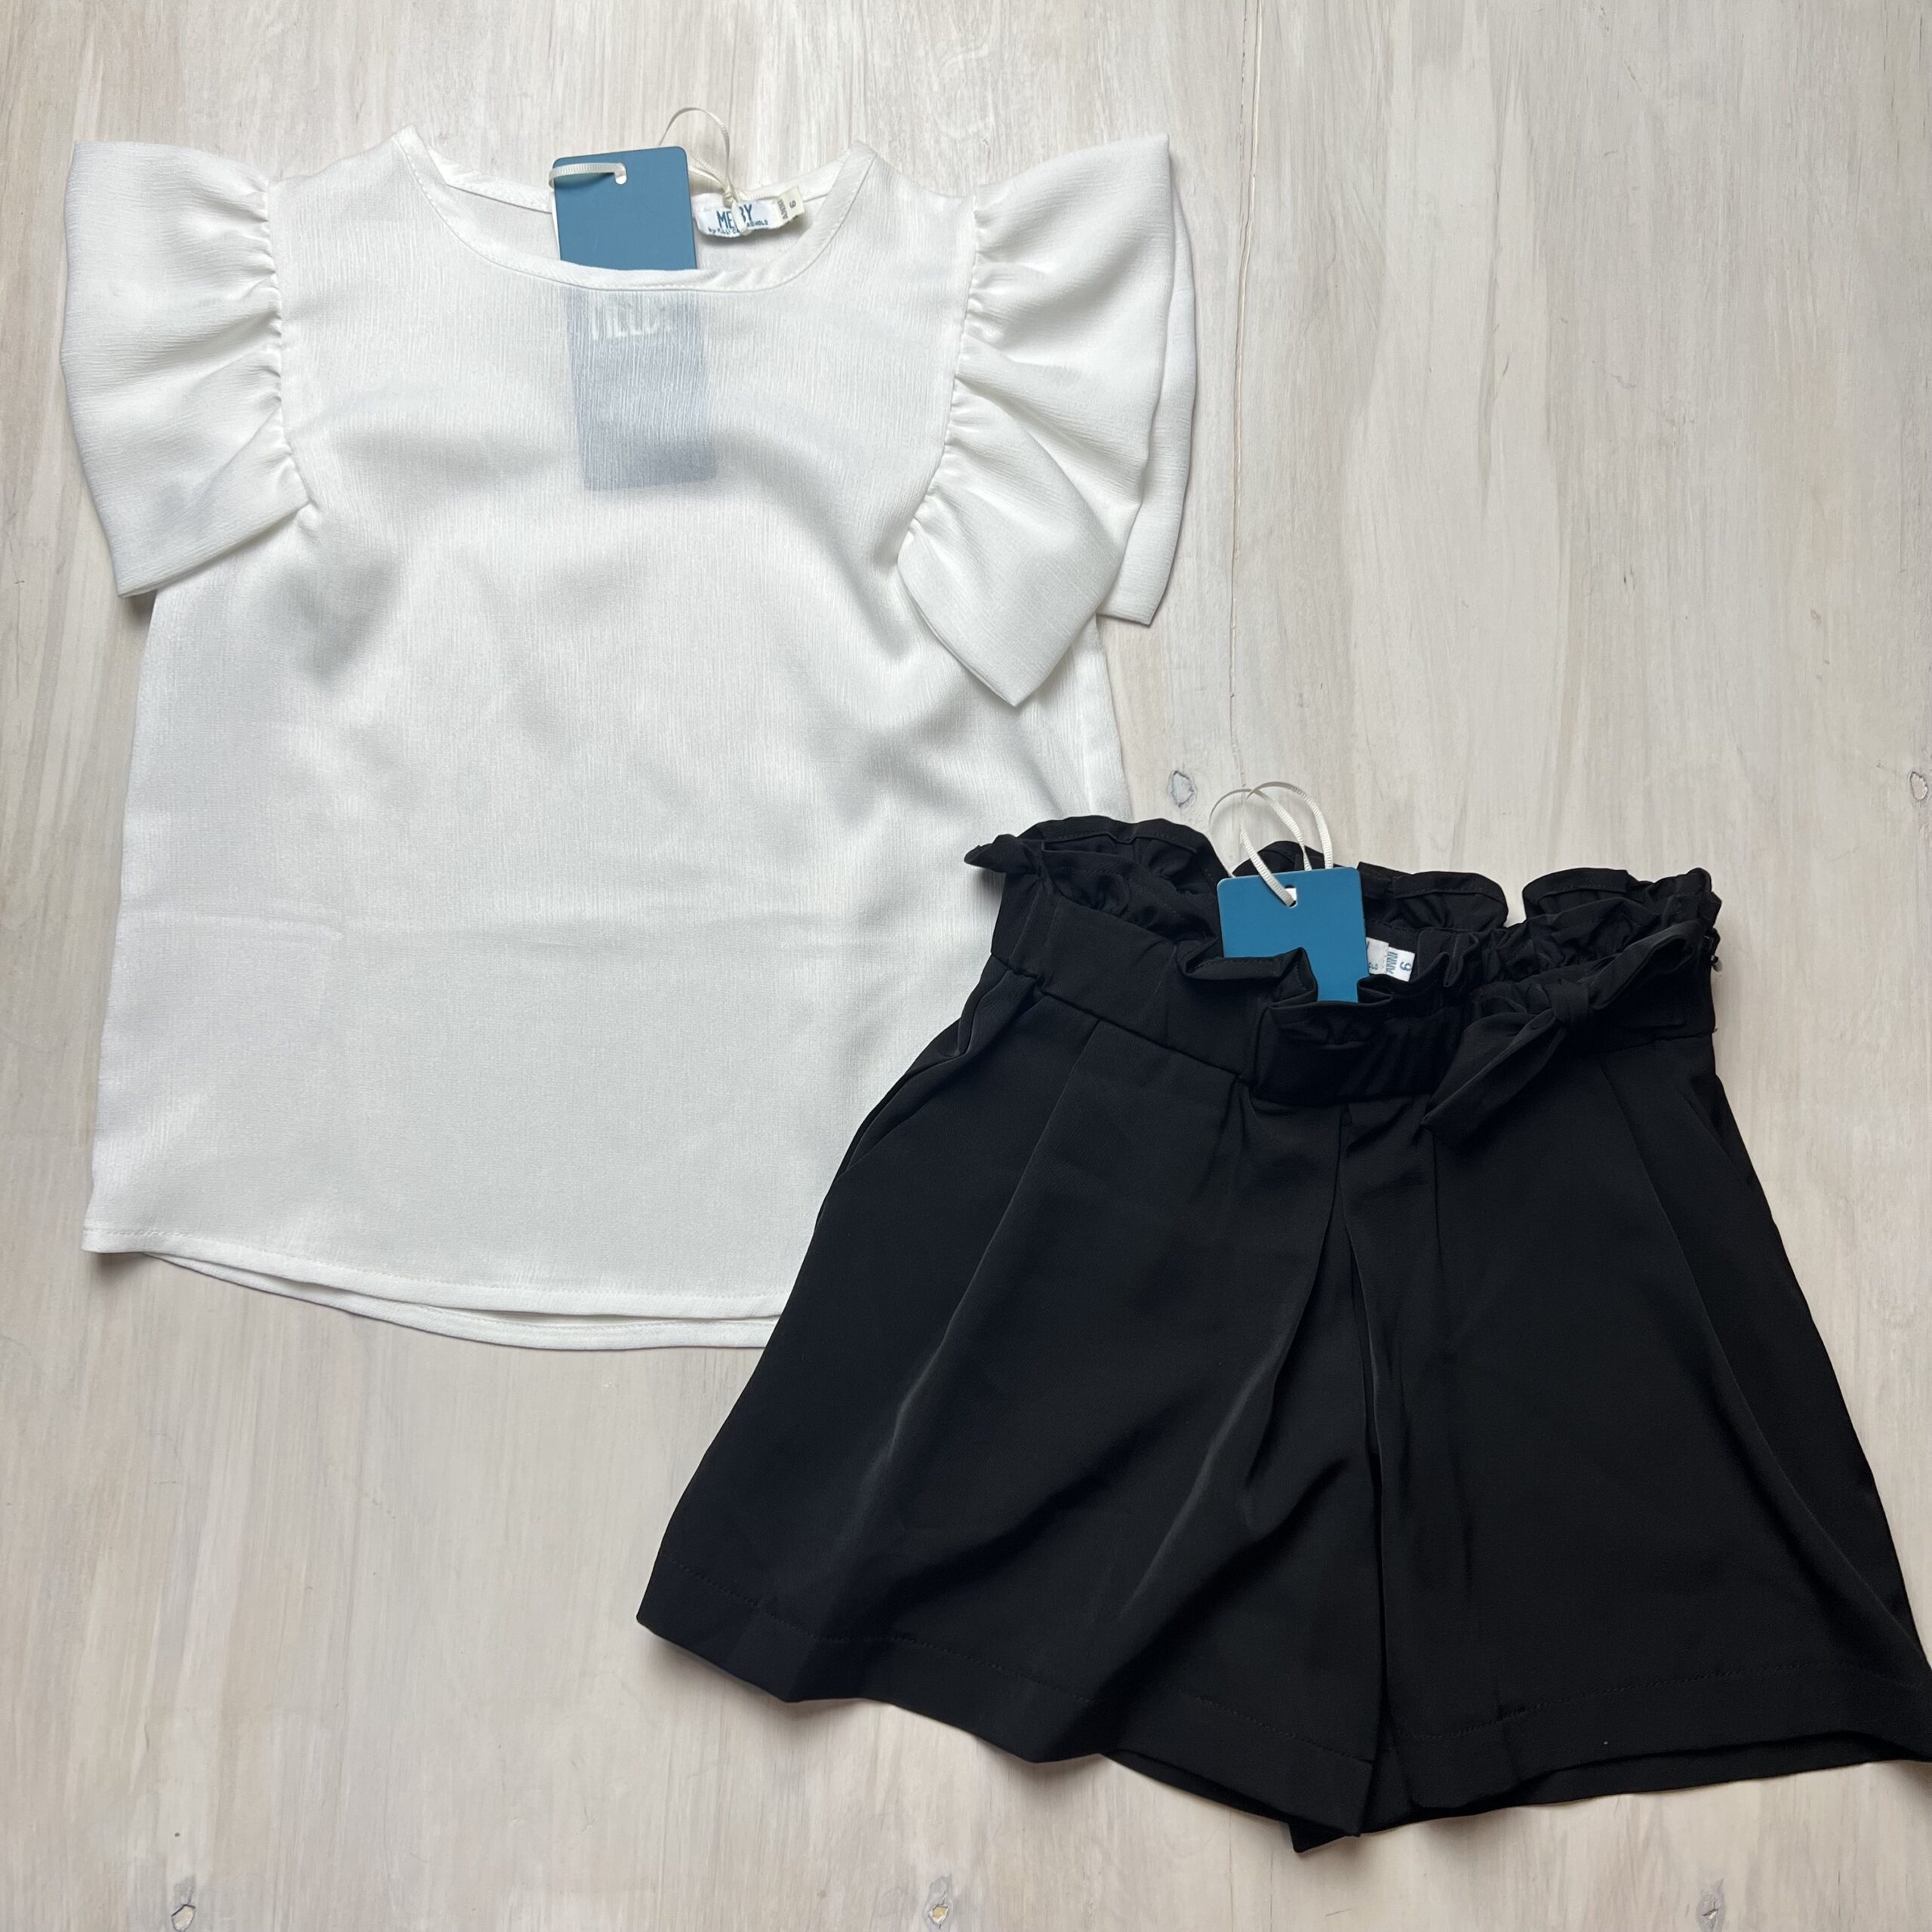 completo-blusa-bianca-camicetta-manica-corta-pantaloncino-nero